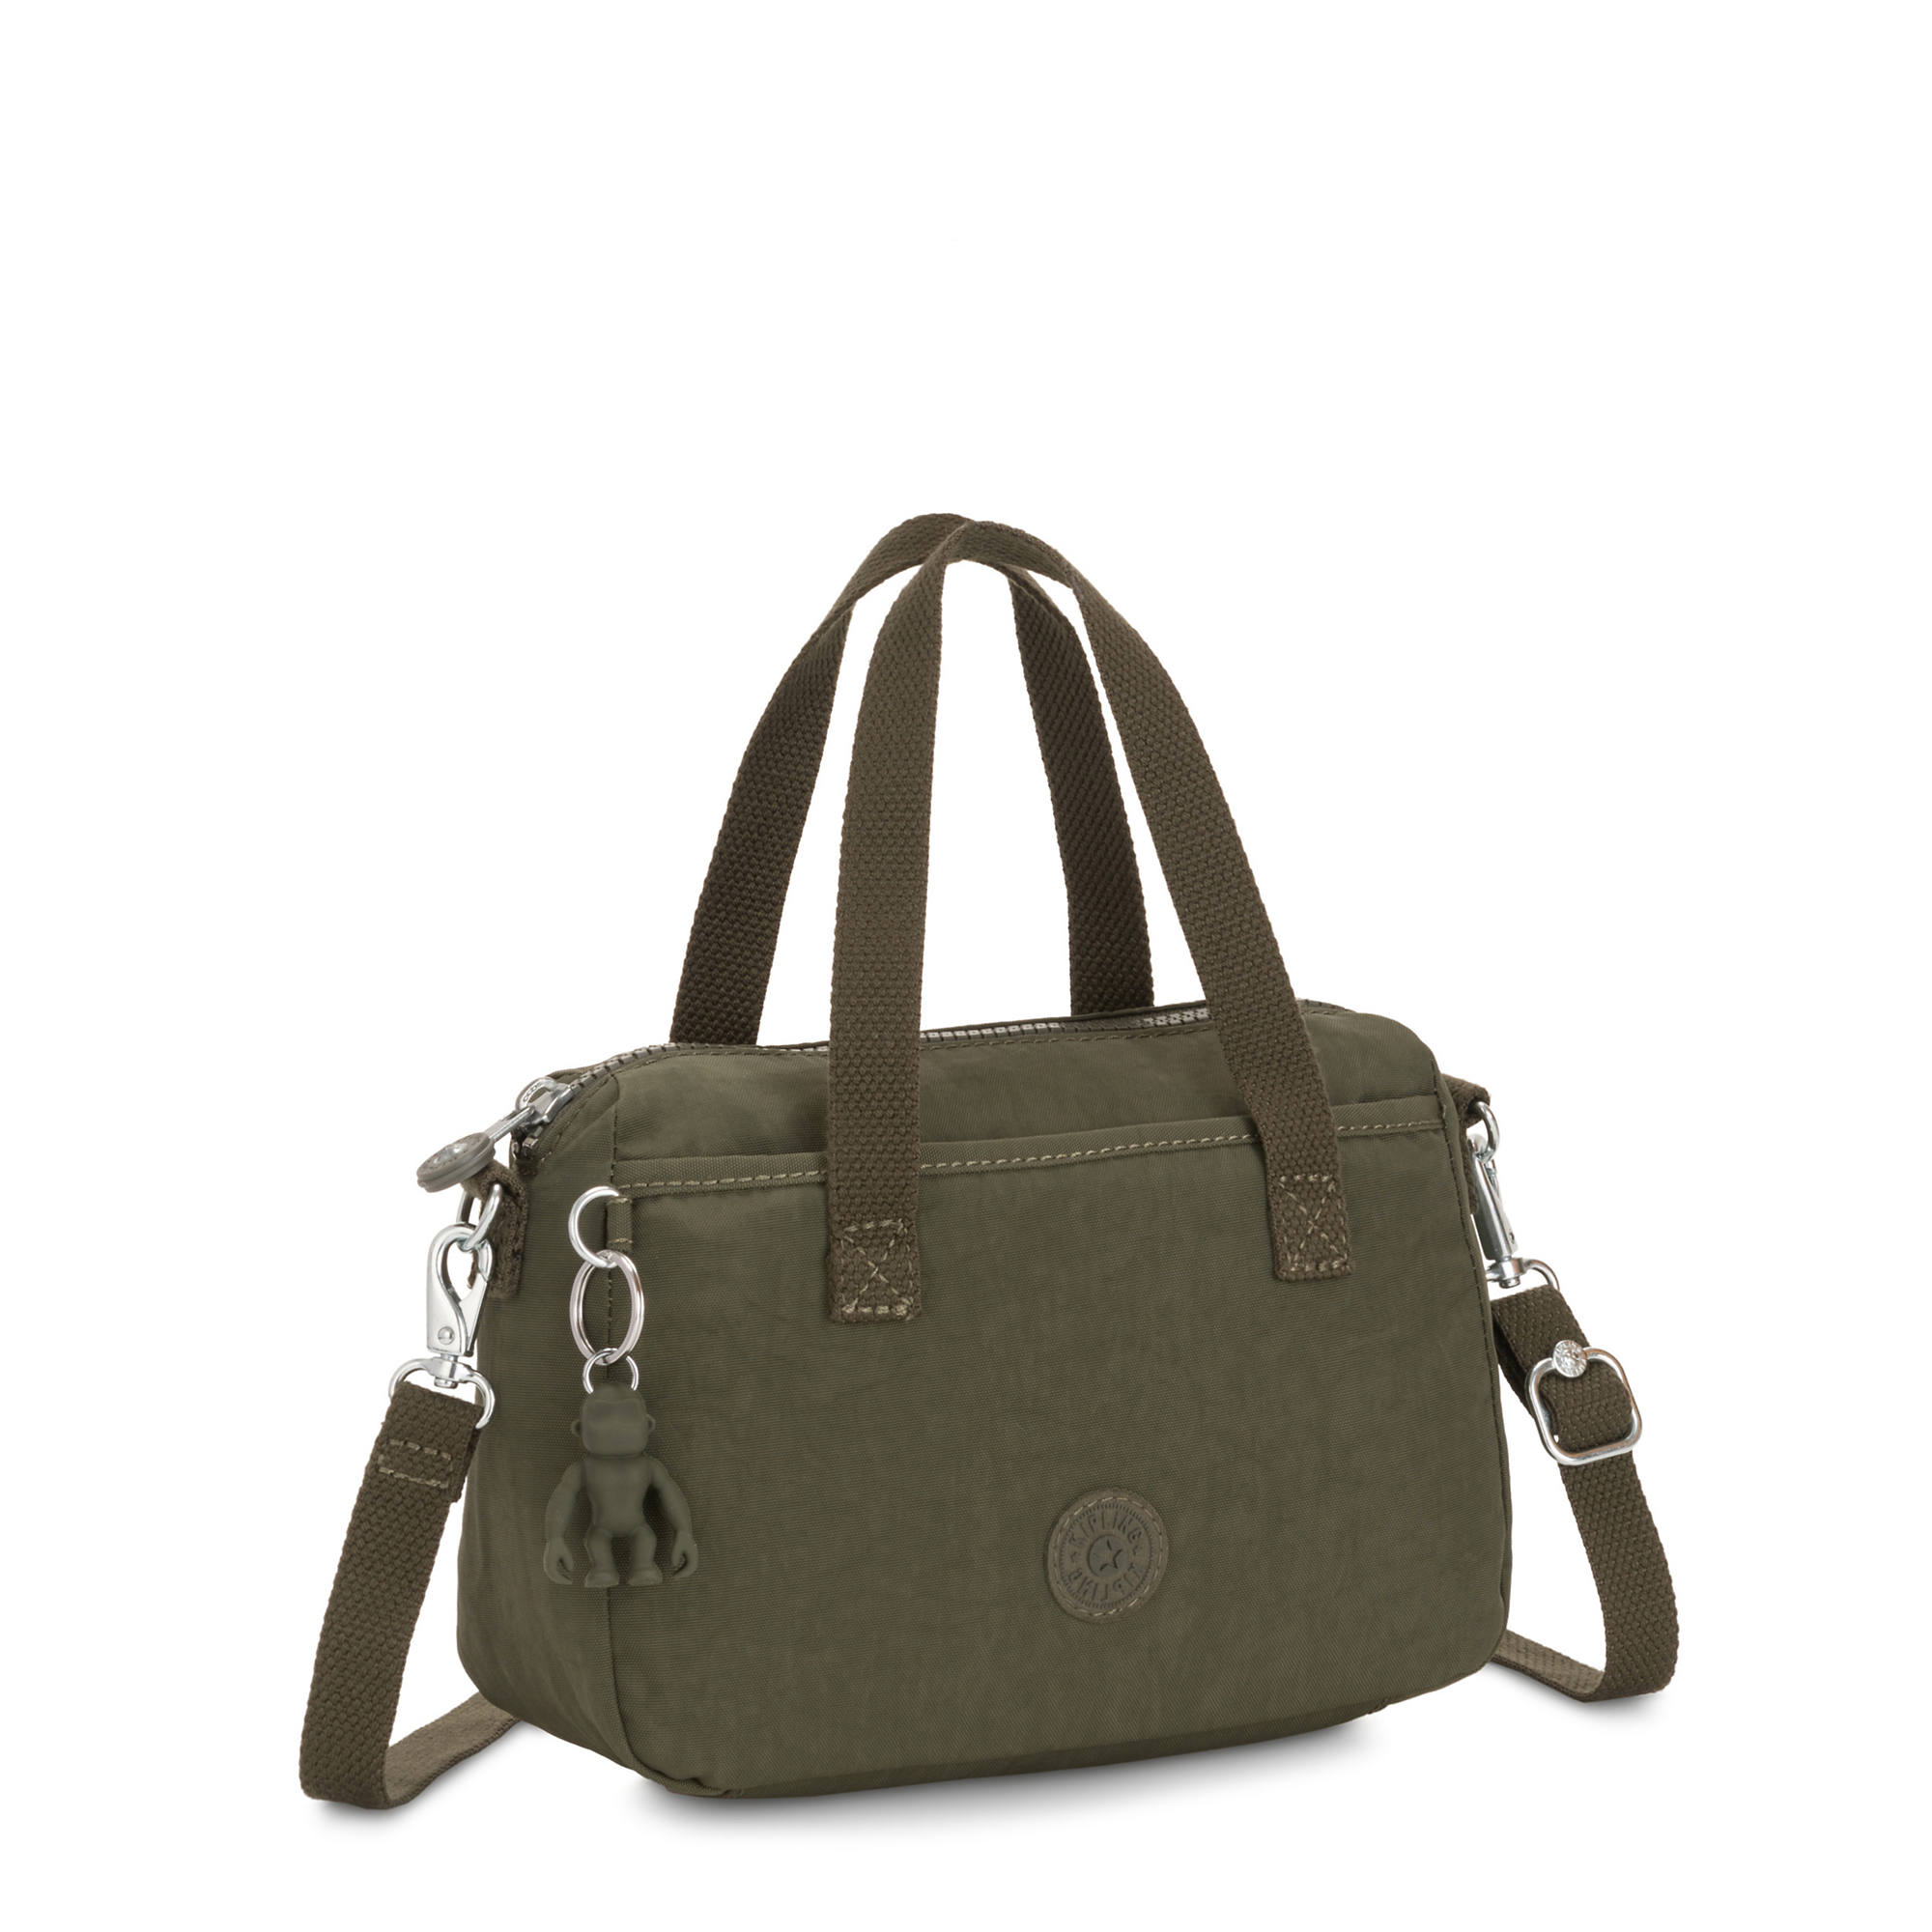 Kipling Emoli Mini Handbag | eBay